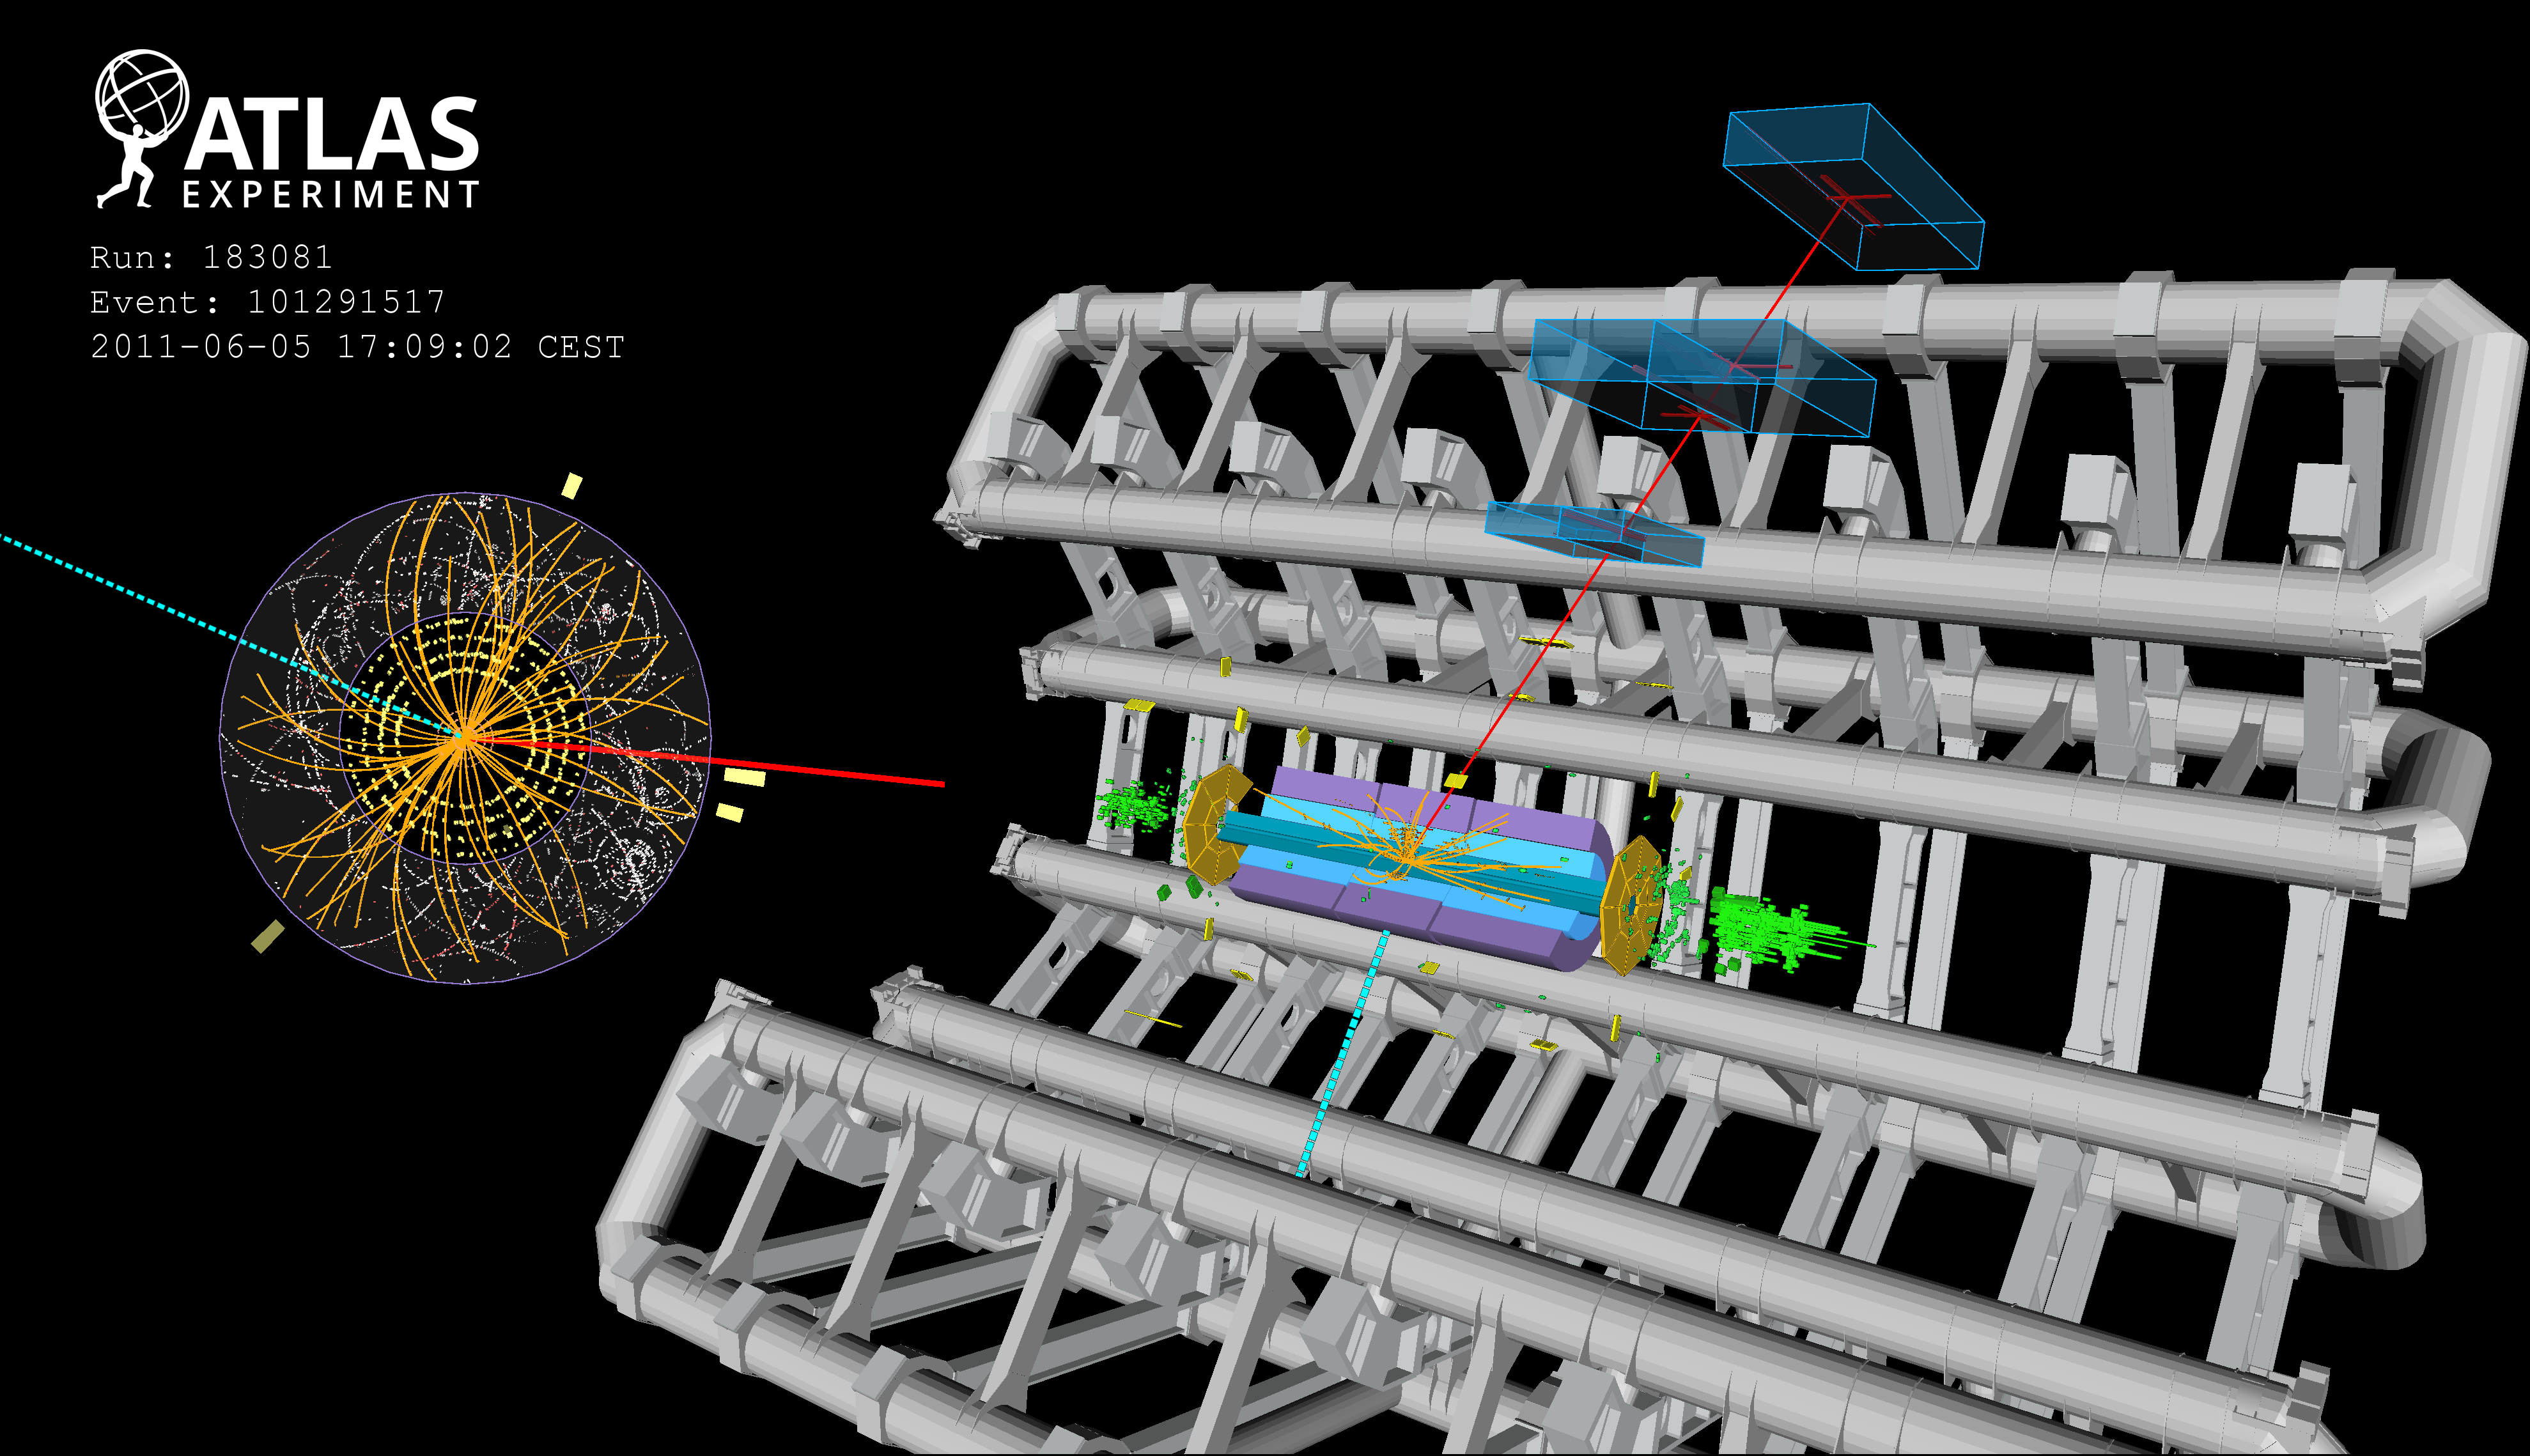 Visualización del espectáculo cuántico: un posible bosón W se descompone en un muon y un neutrino en un experimento. Imagen: CERN